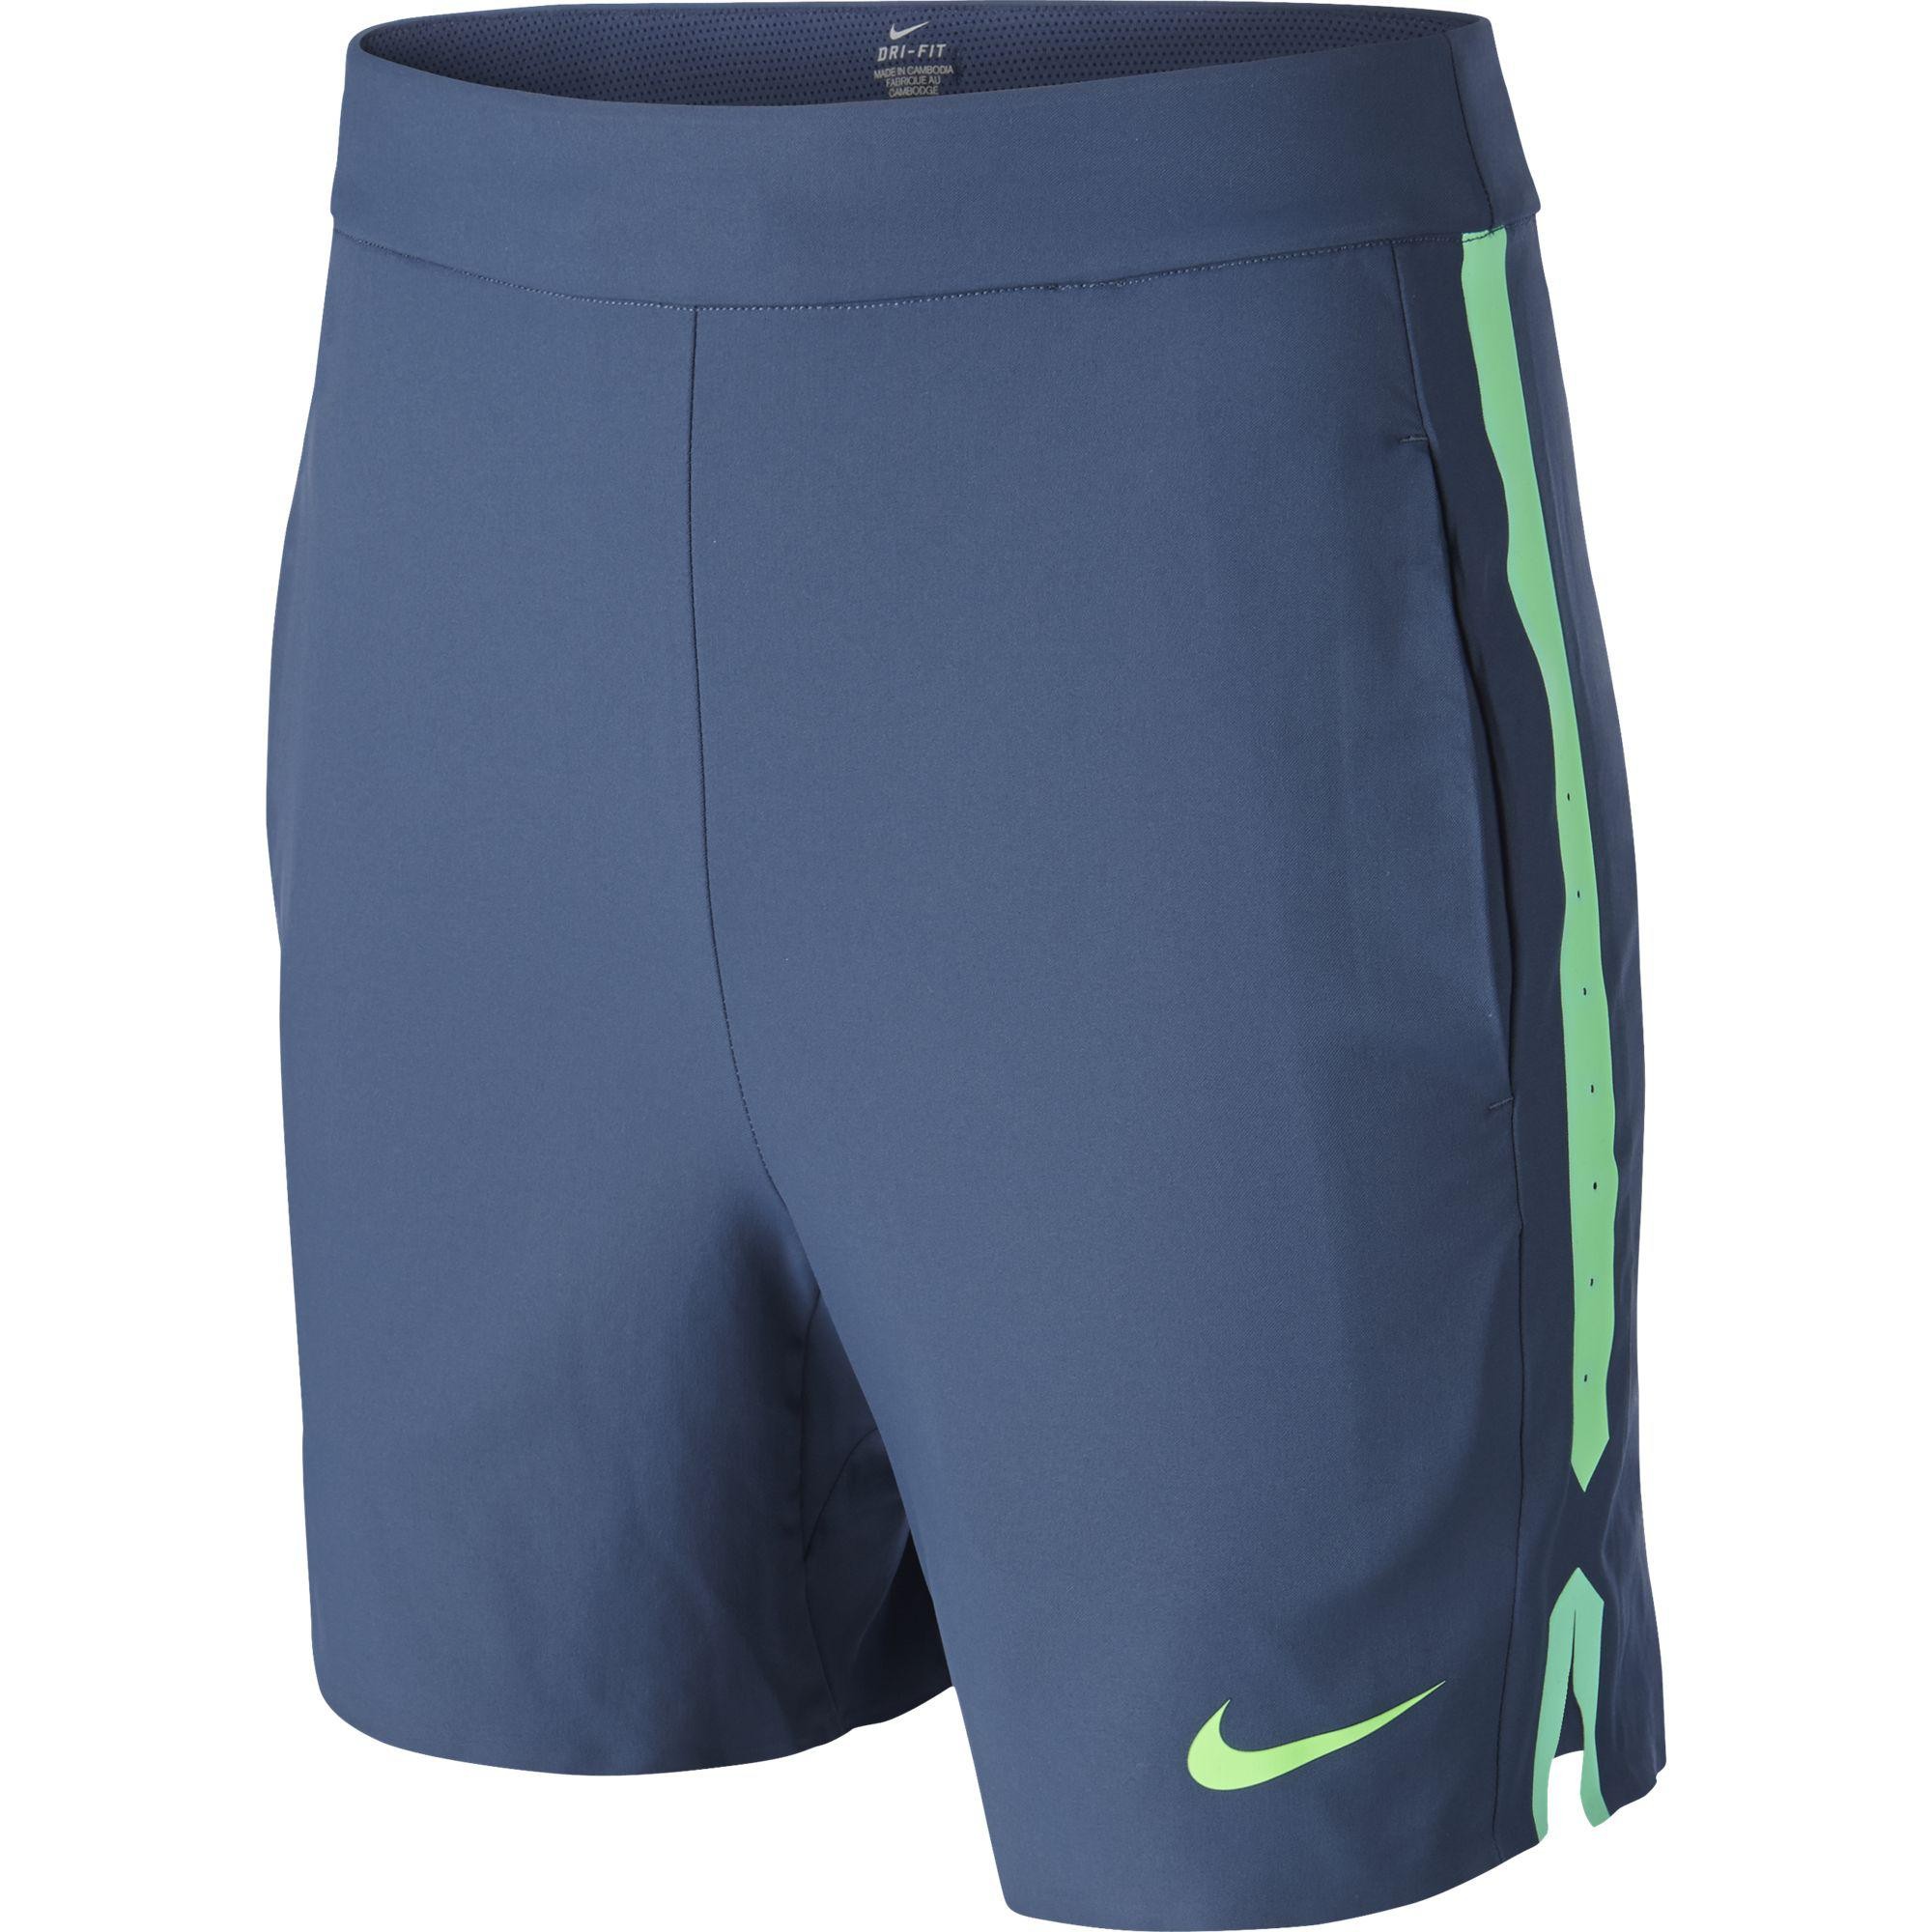 Chlapecké tenisové šortky Nike Gladiator squadrom blue/greenXL